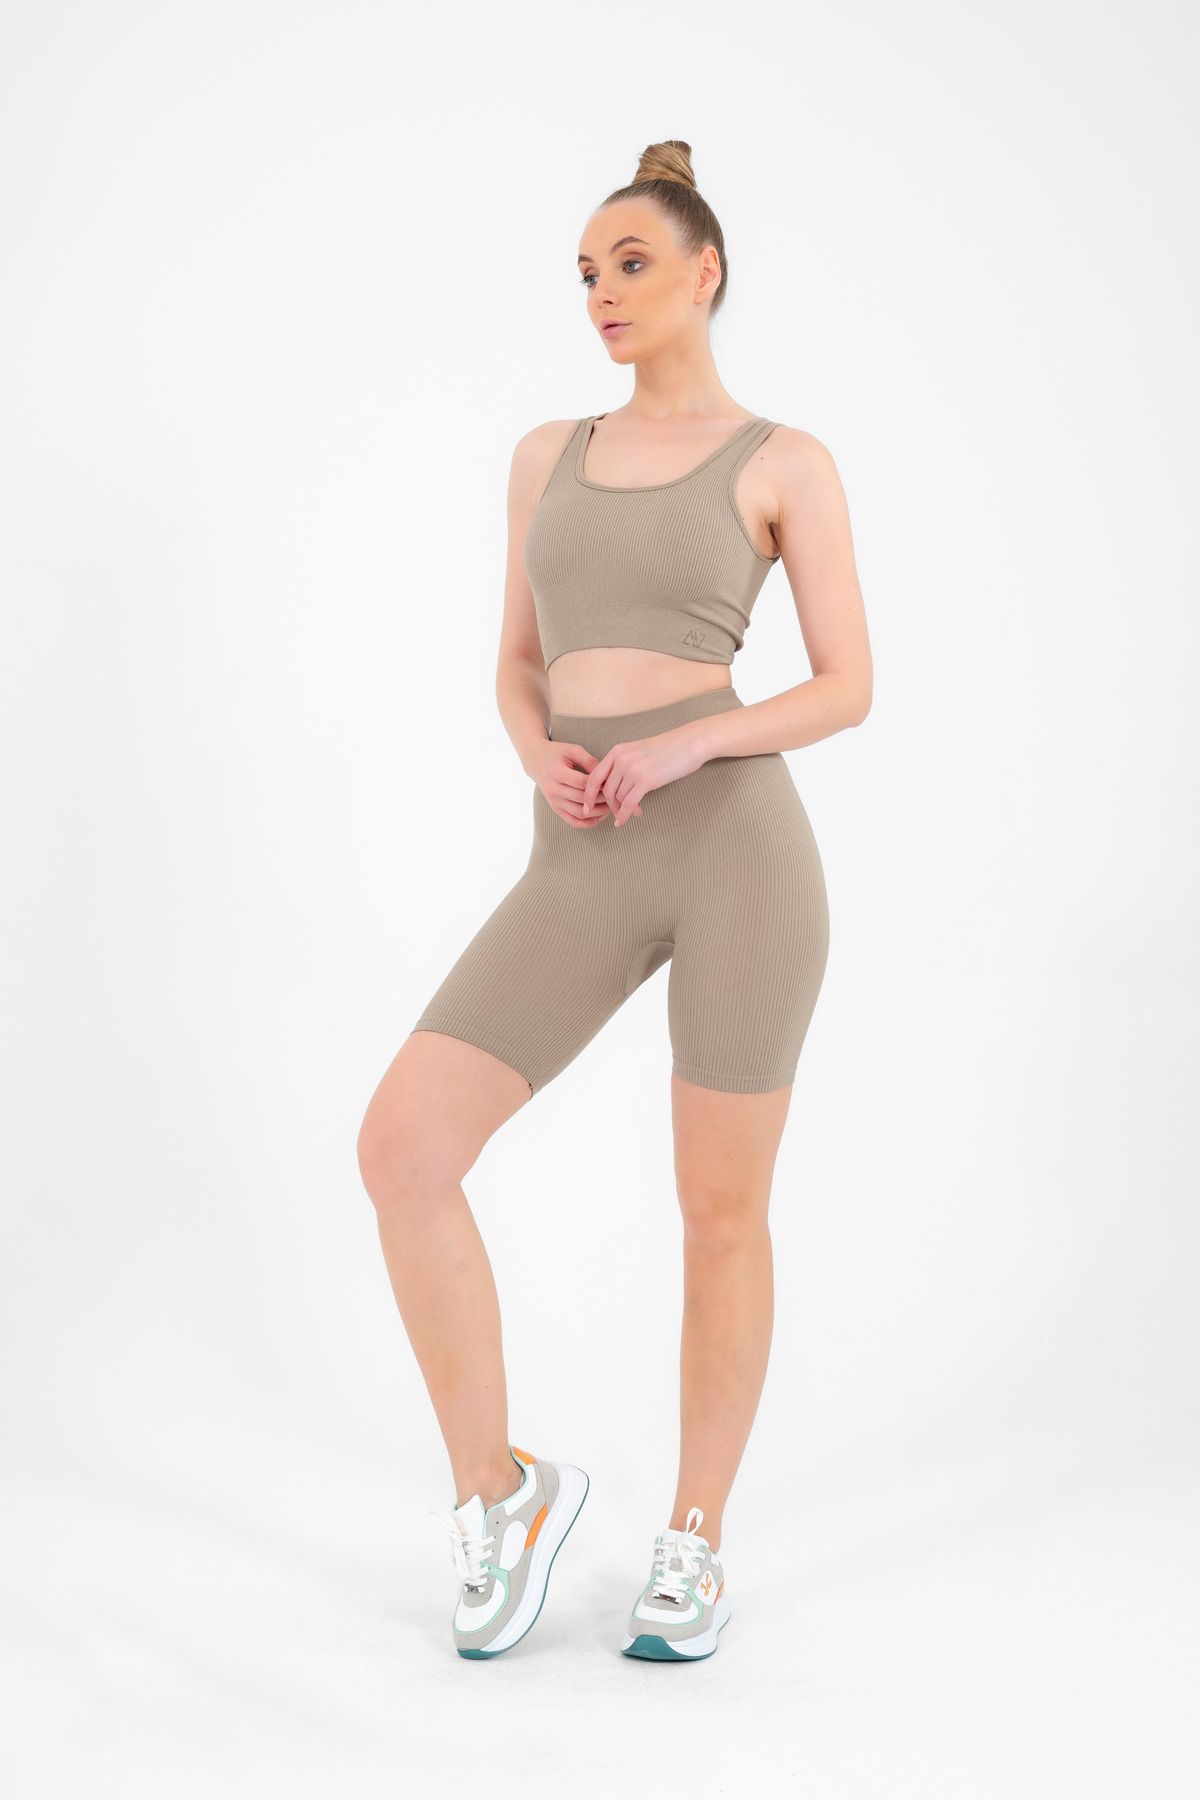 Escetic Kadın Midstone Toparlayıcı Yüksek Bel Esnek Fitness Yoga Plates Bra Şort Tayt Takım A3087